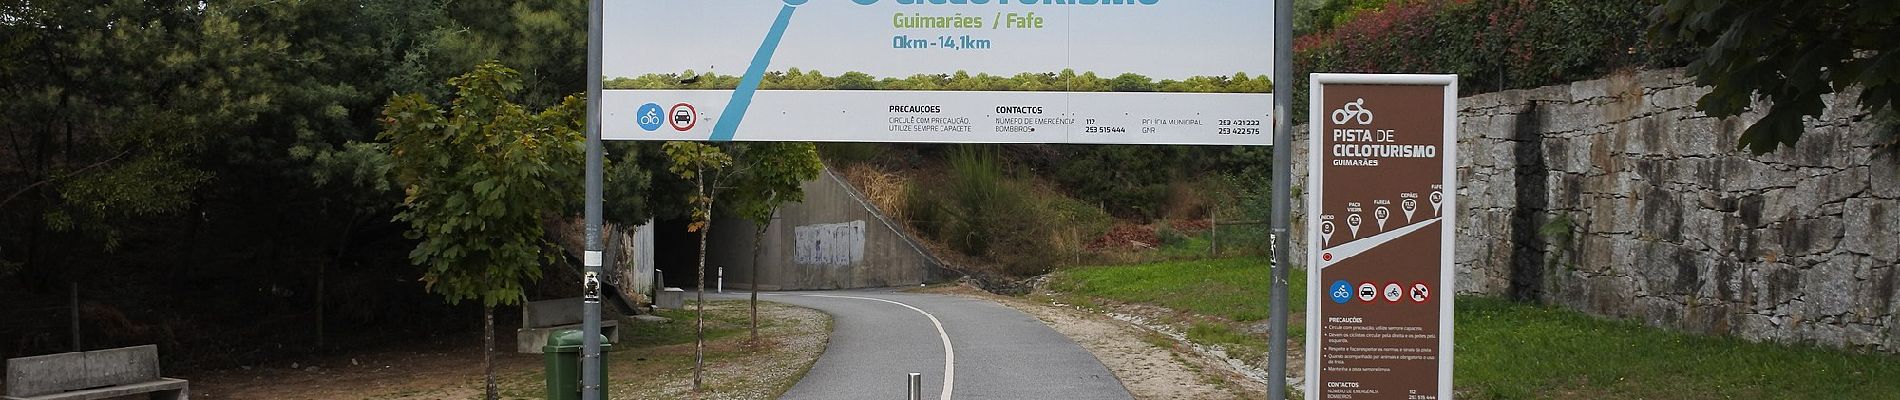 Randonnée A pied Mesão Frio - Pista de Cicloturismo Guimarães-Fafe - Photo